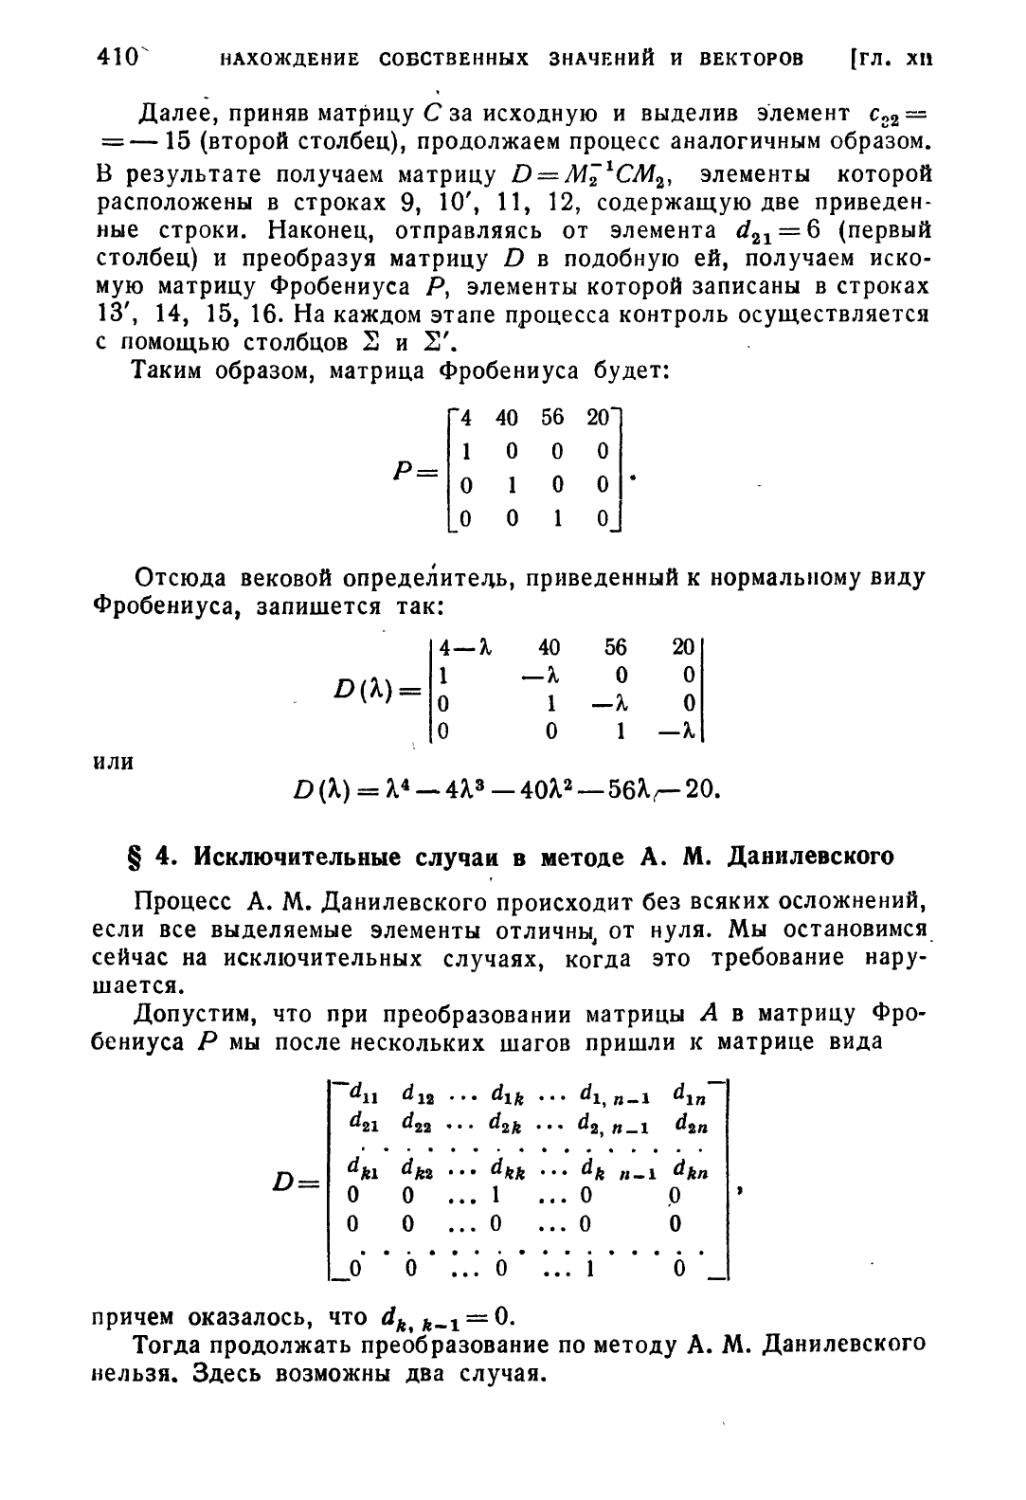 § 4. Исключительные случаи в методе А.М. Данилевского